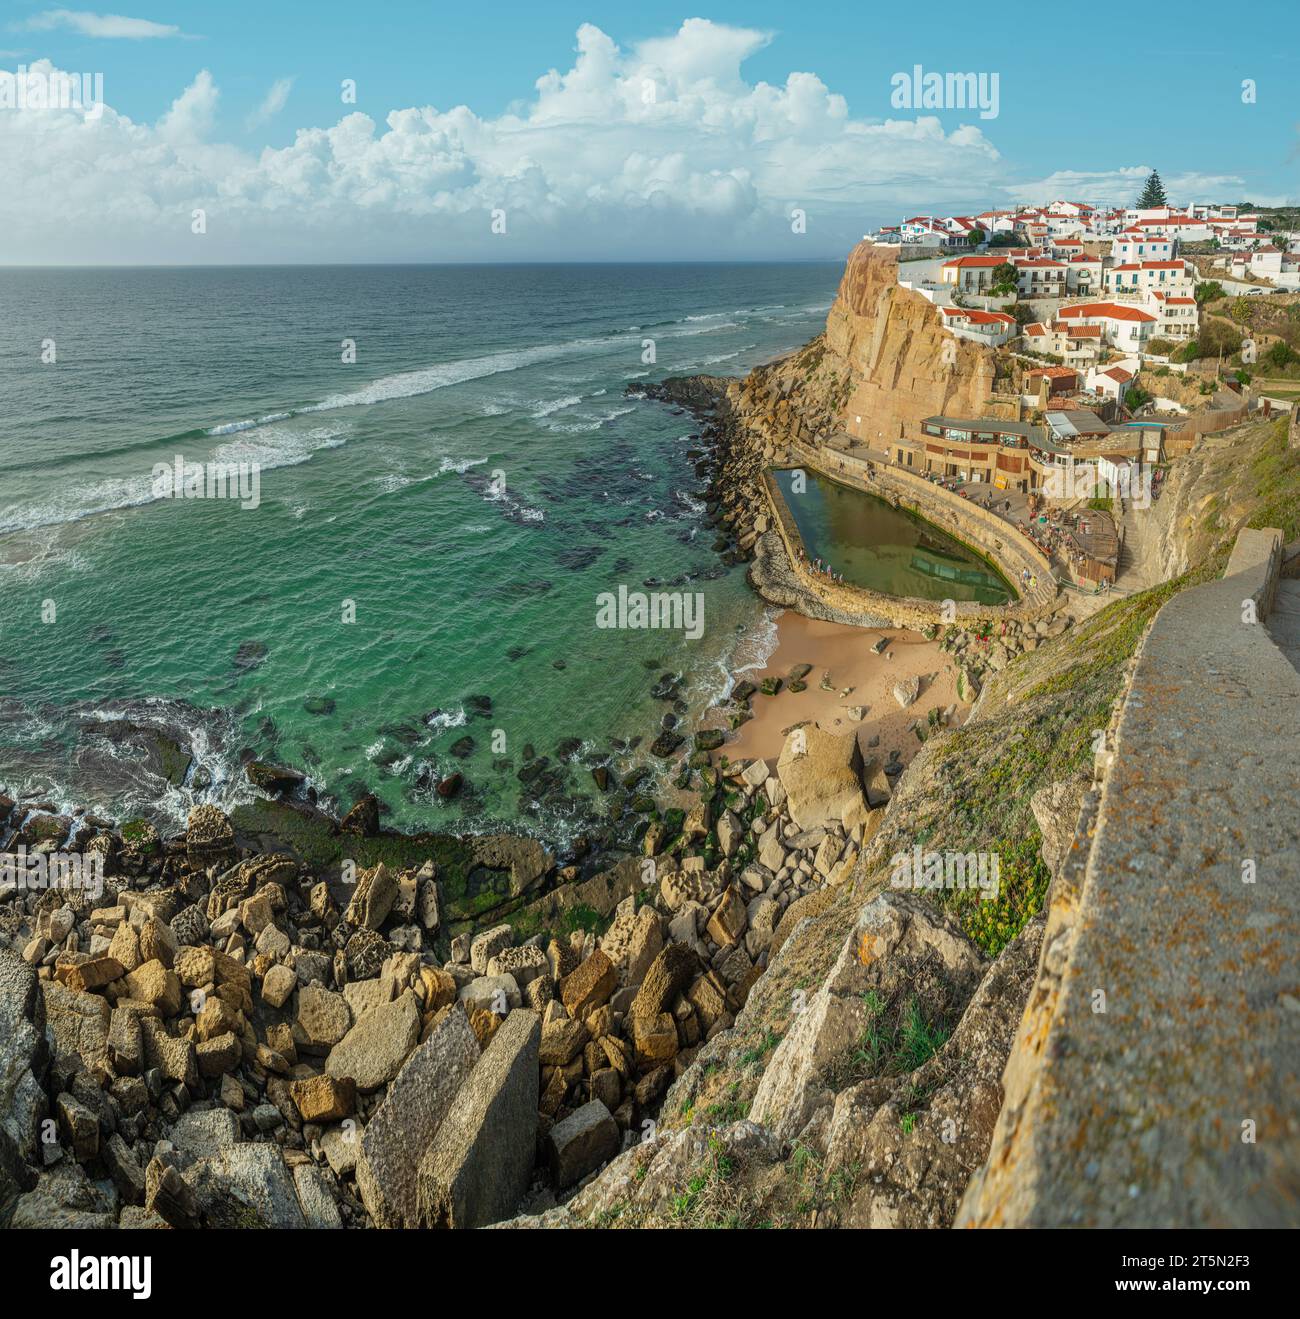 Meravigliosa vista su Azenhas do Mar, piccola città dell'oceano Atlantico Coast.Municipality di Sintra, Portogallo. Foto Stock